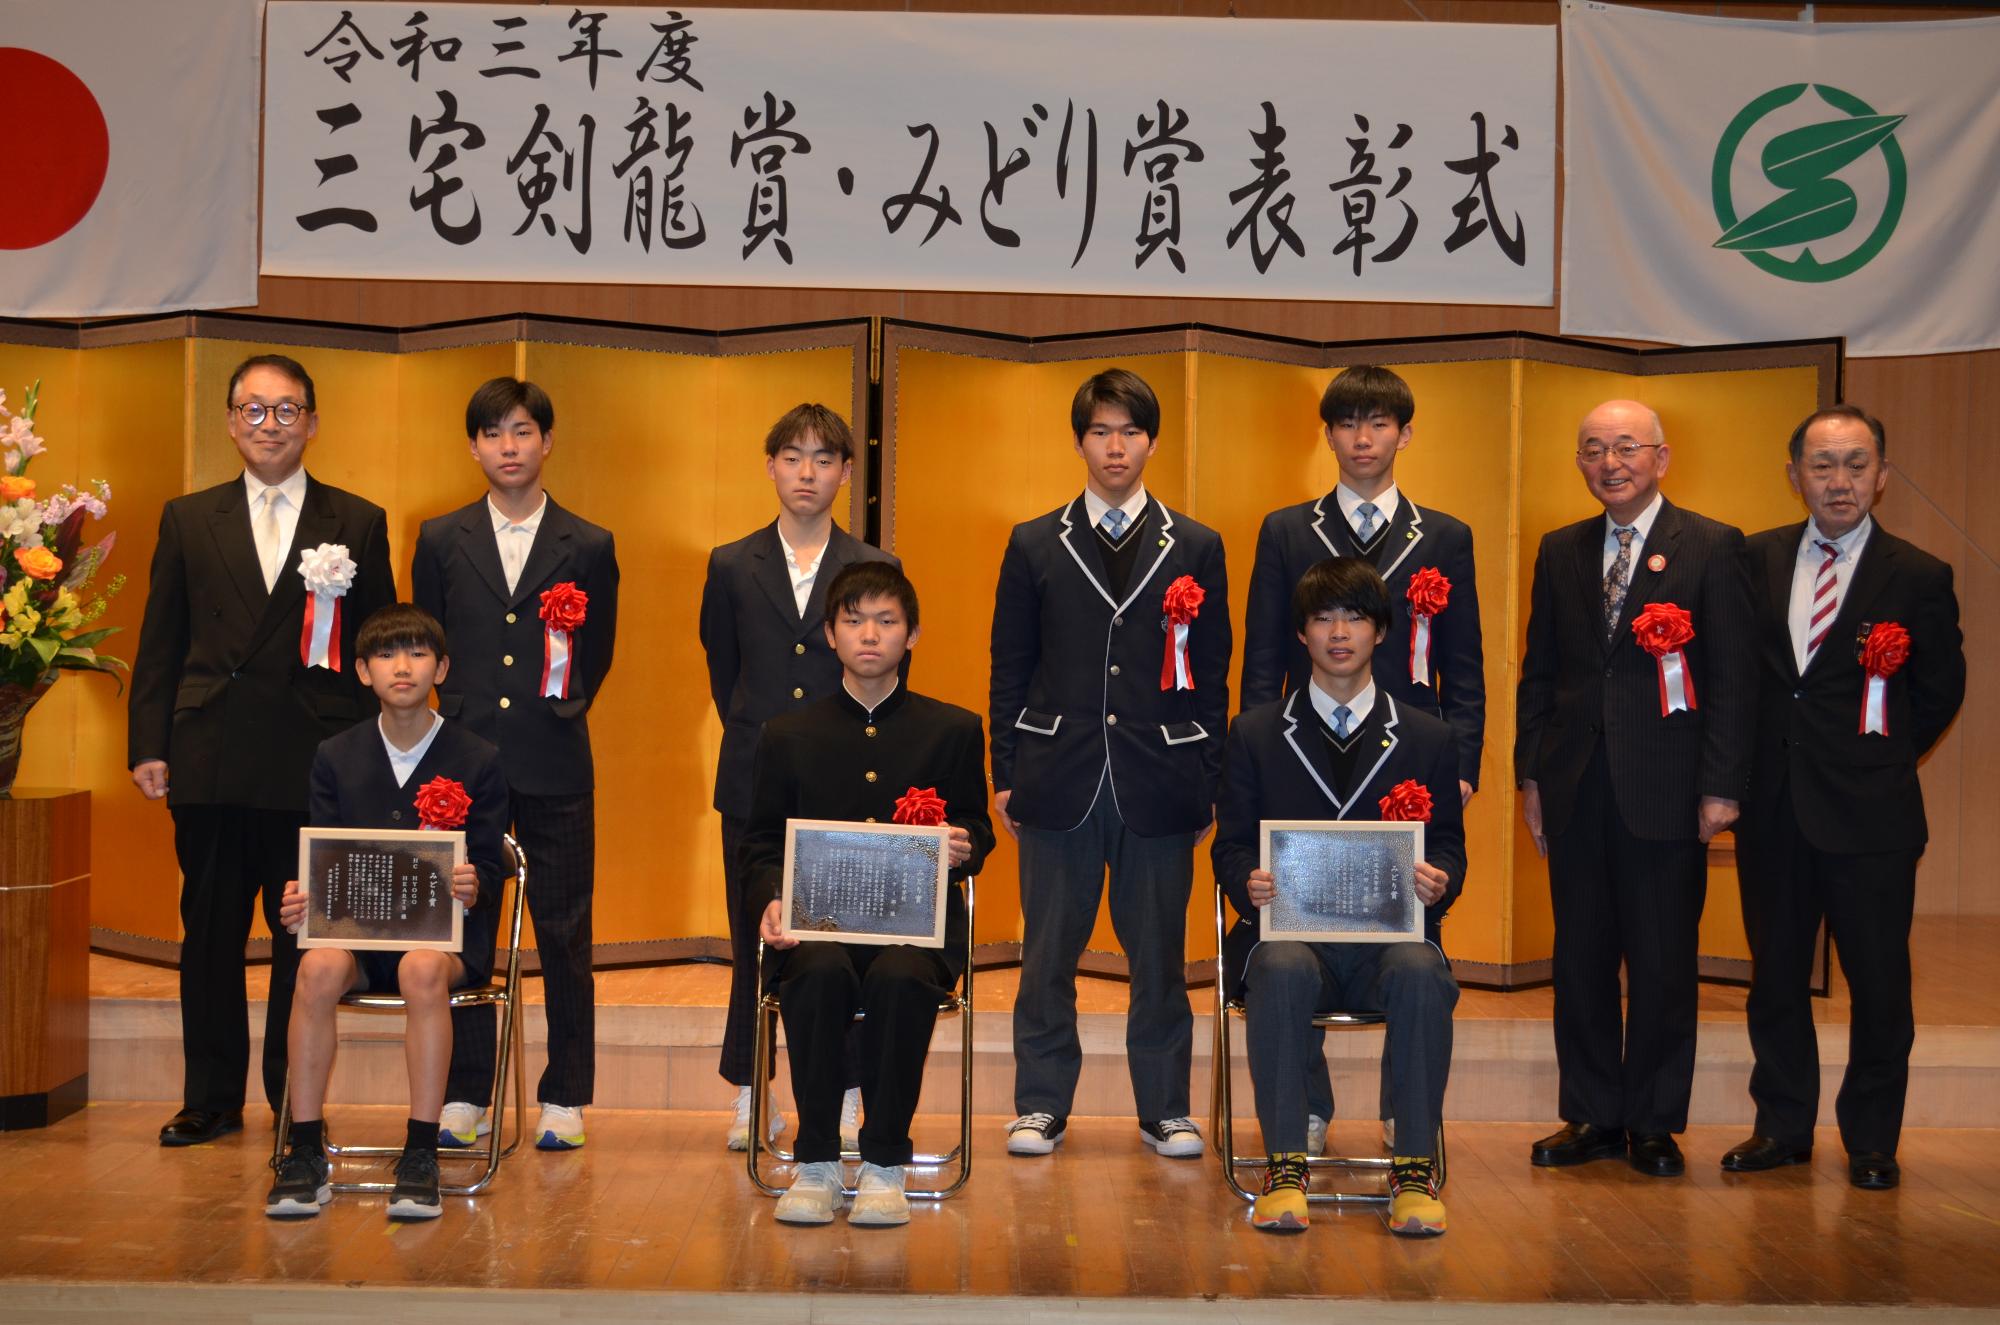 受賞者3名が表彰盾を座ってひざにかかげており、後列に関係者、市長、教育長、議長が立っている